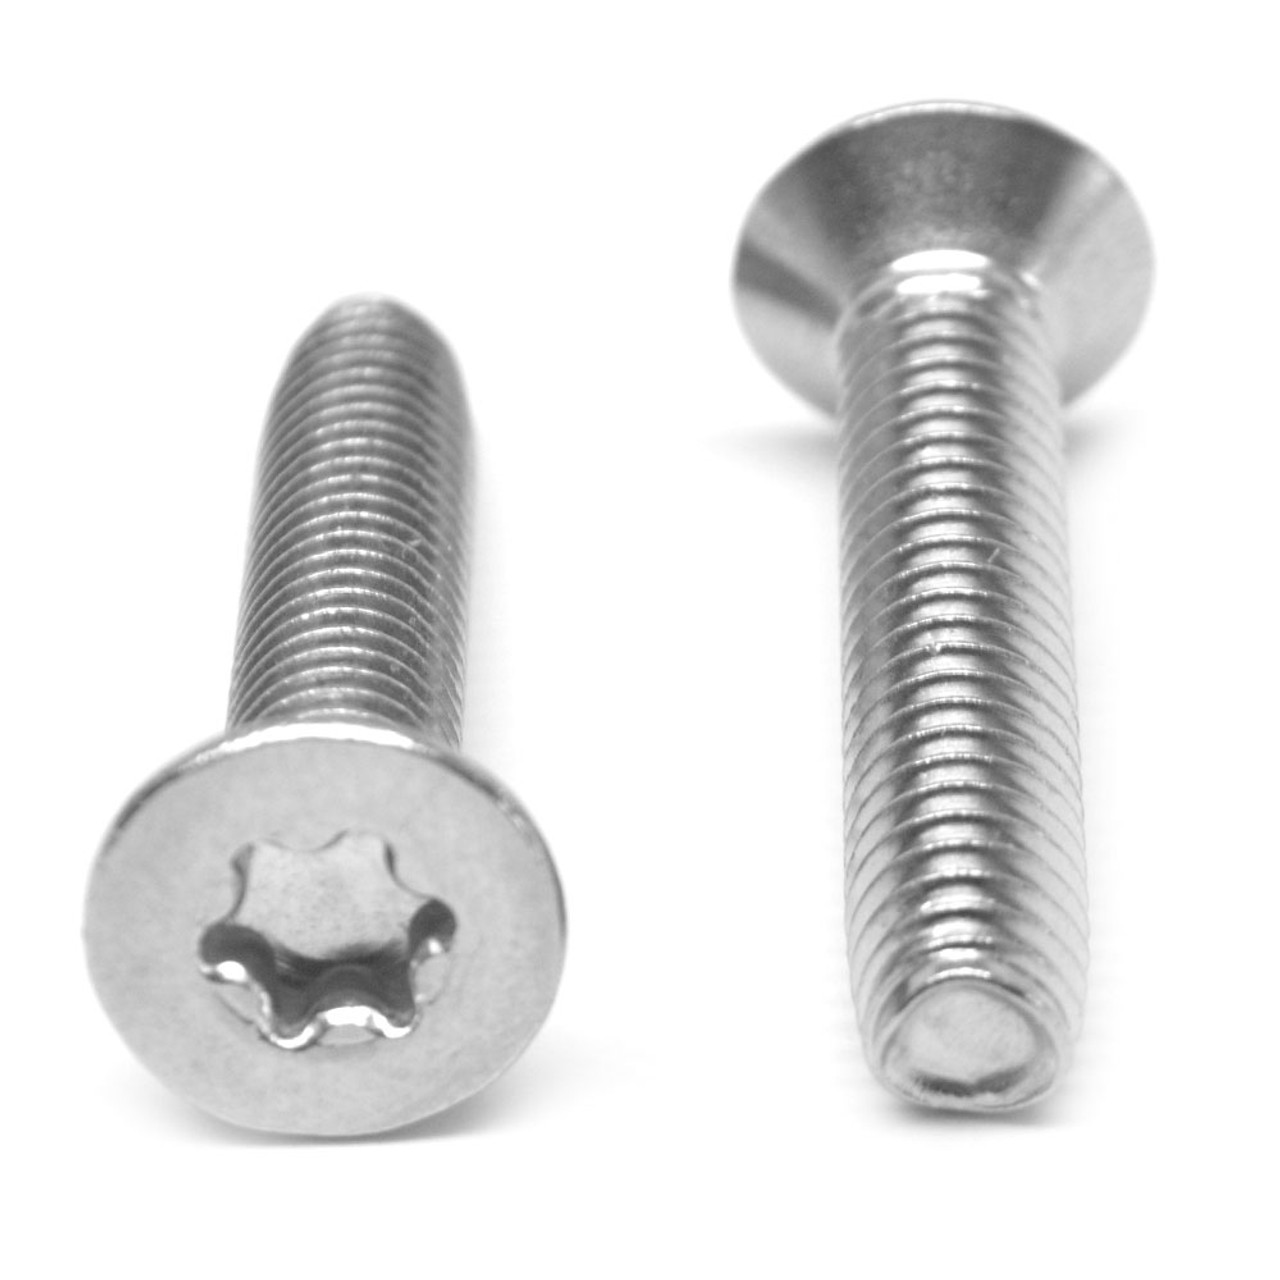 #6-32 x 5/16" (FT) Coarse Thread Taptite?-Alternative Thread Rolling Screw 6 Lobe Flat Head Low Carbon Steel Zinc Plated / Wax